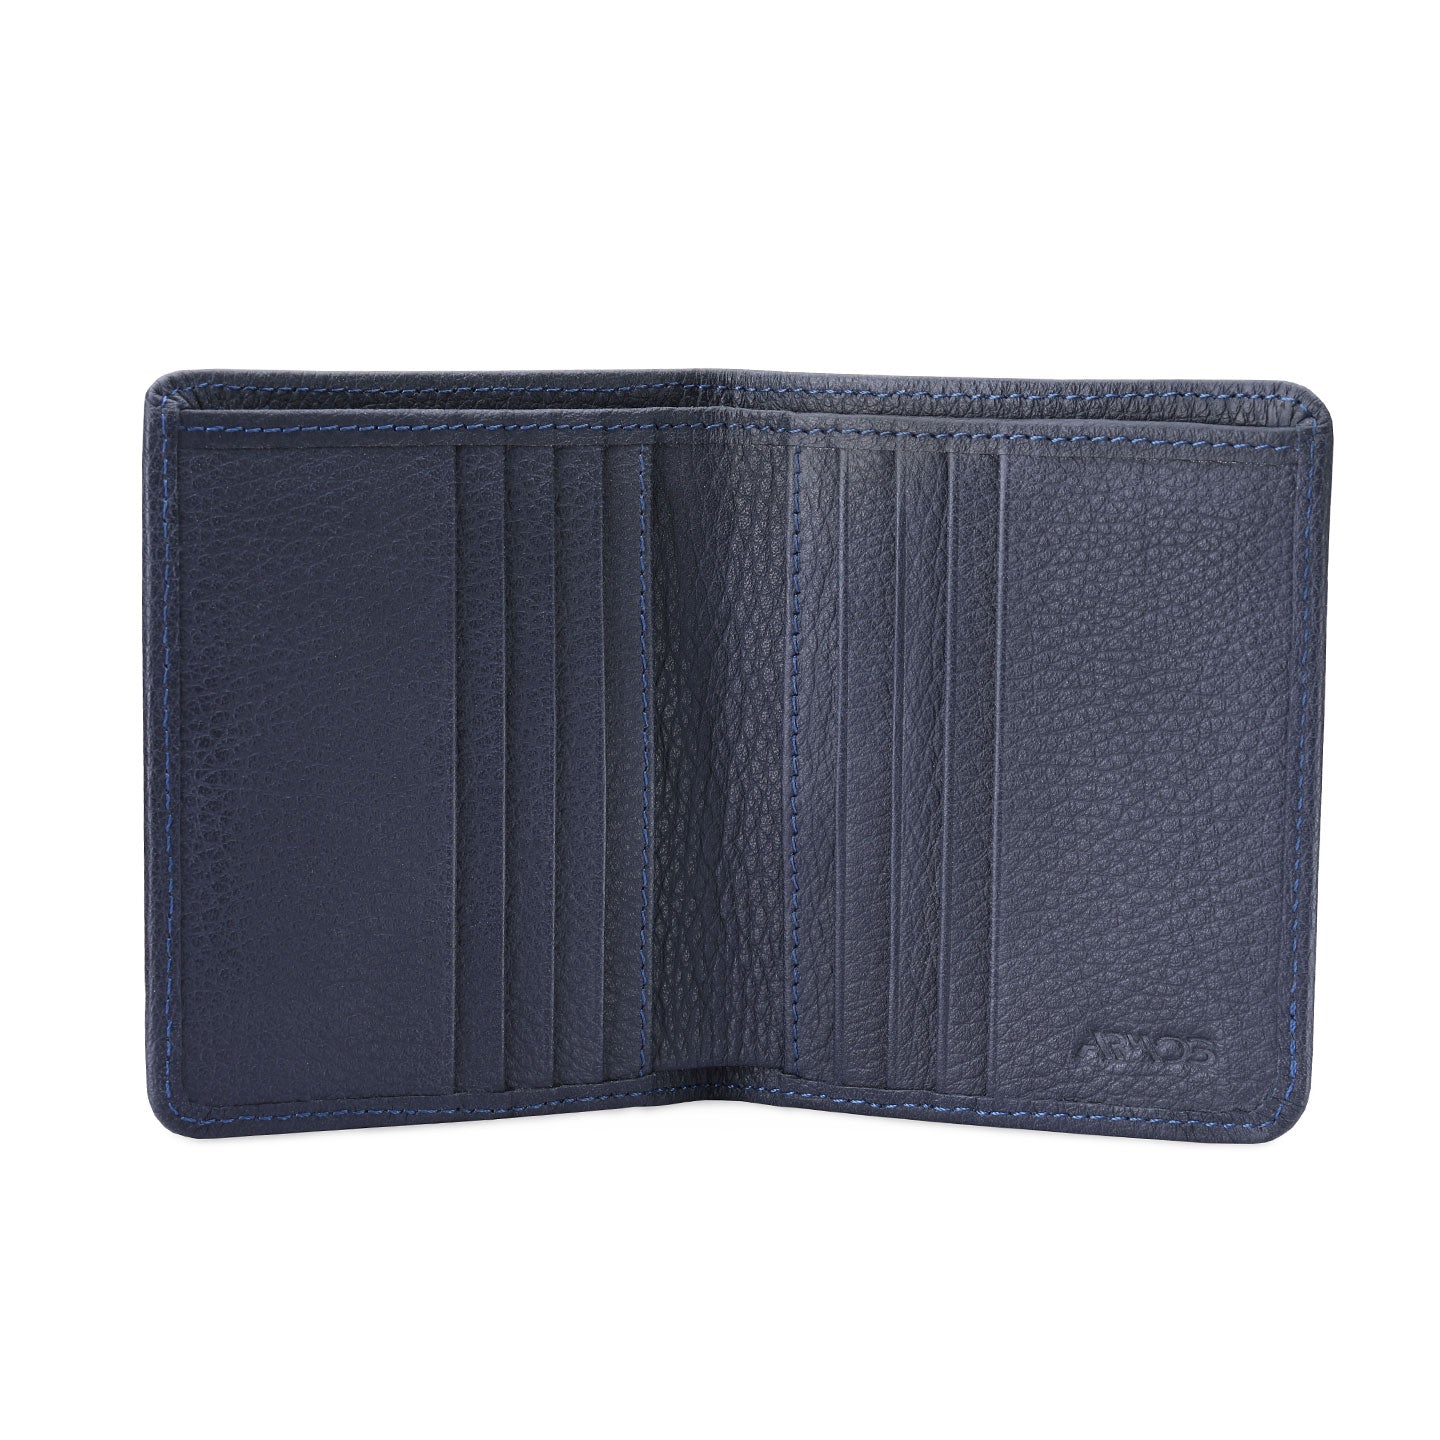 Folding men's wallet